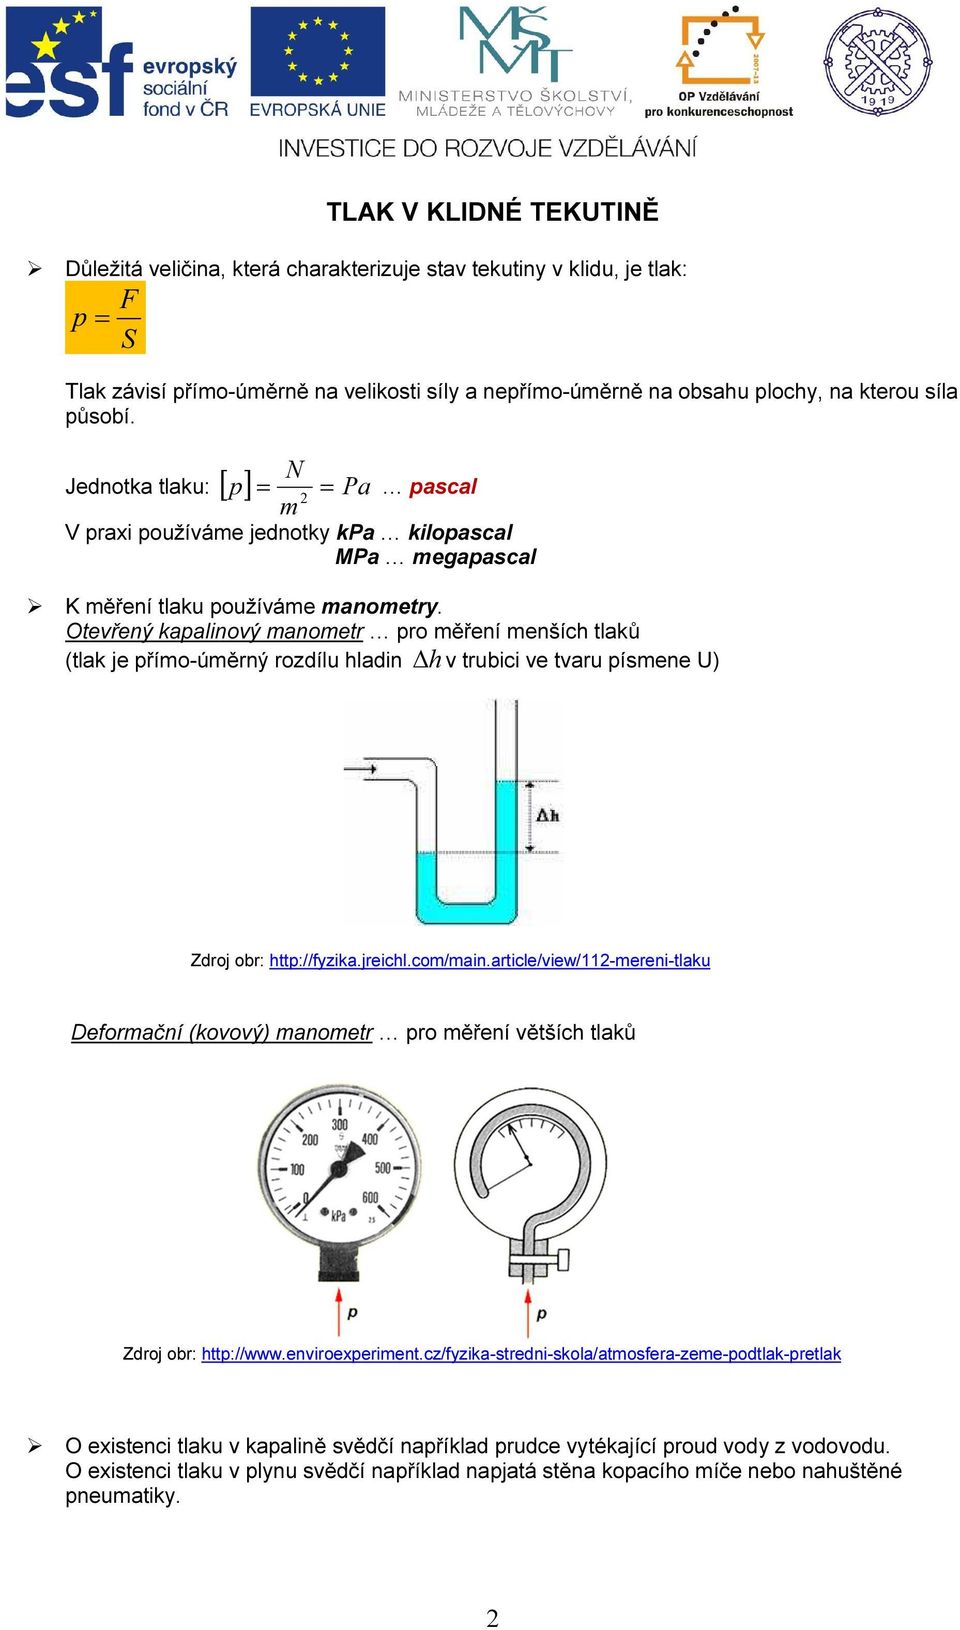 Otevřený kapalinový manometr pro měření menších tlaků (tlak je přímo-úměrný rozdílu hladin h v trubici ve tvaru písmene U) Zdroj obr: http://fyzika.jreichl.com/main.